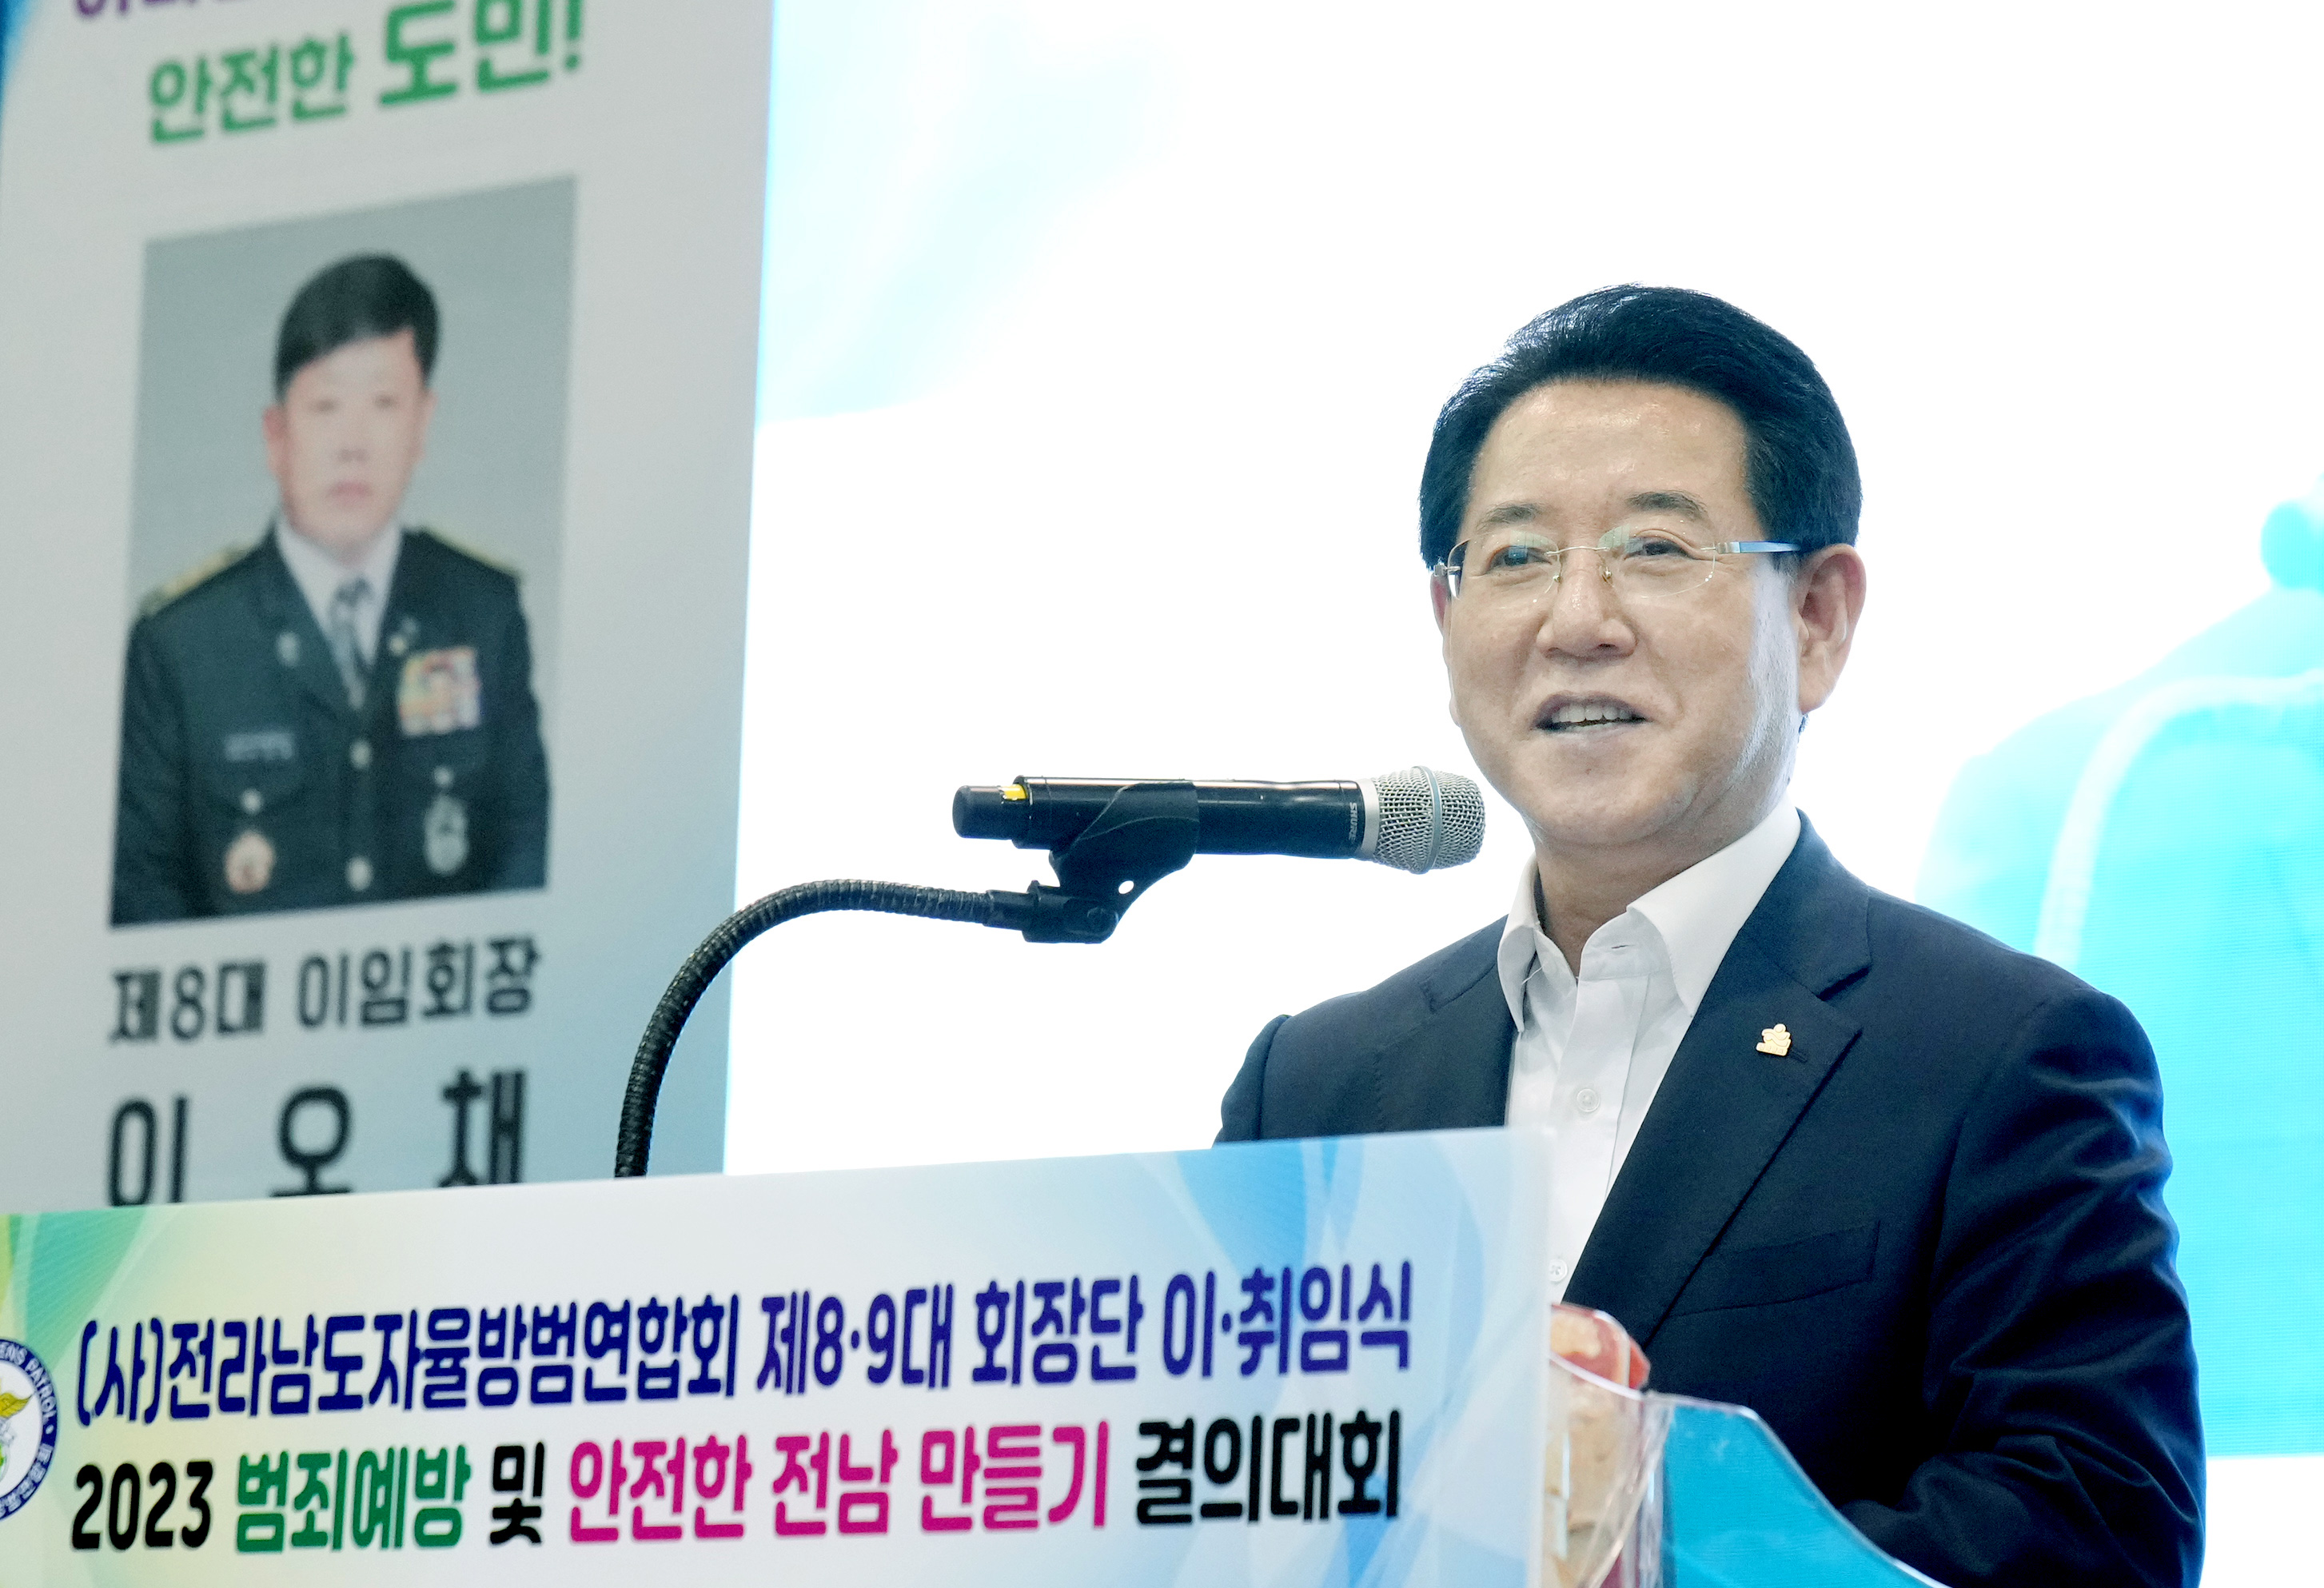 범죄예방 안전한 전남만들기 결의대회4